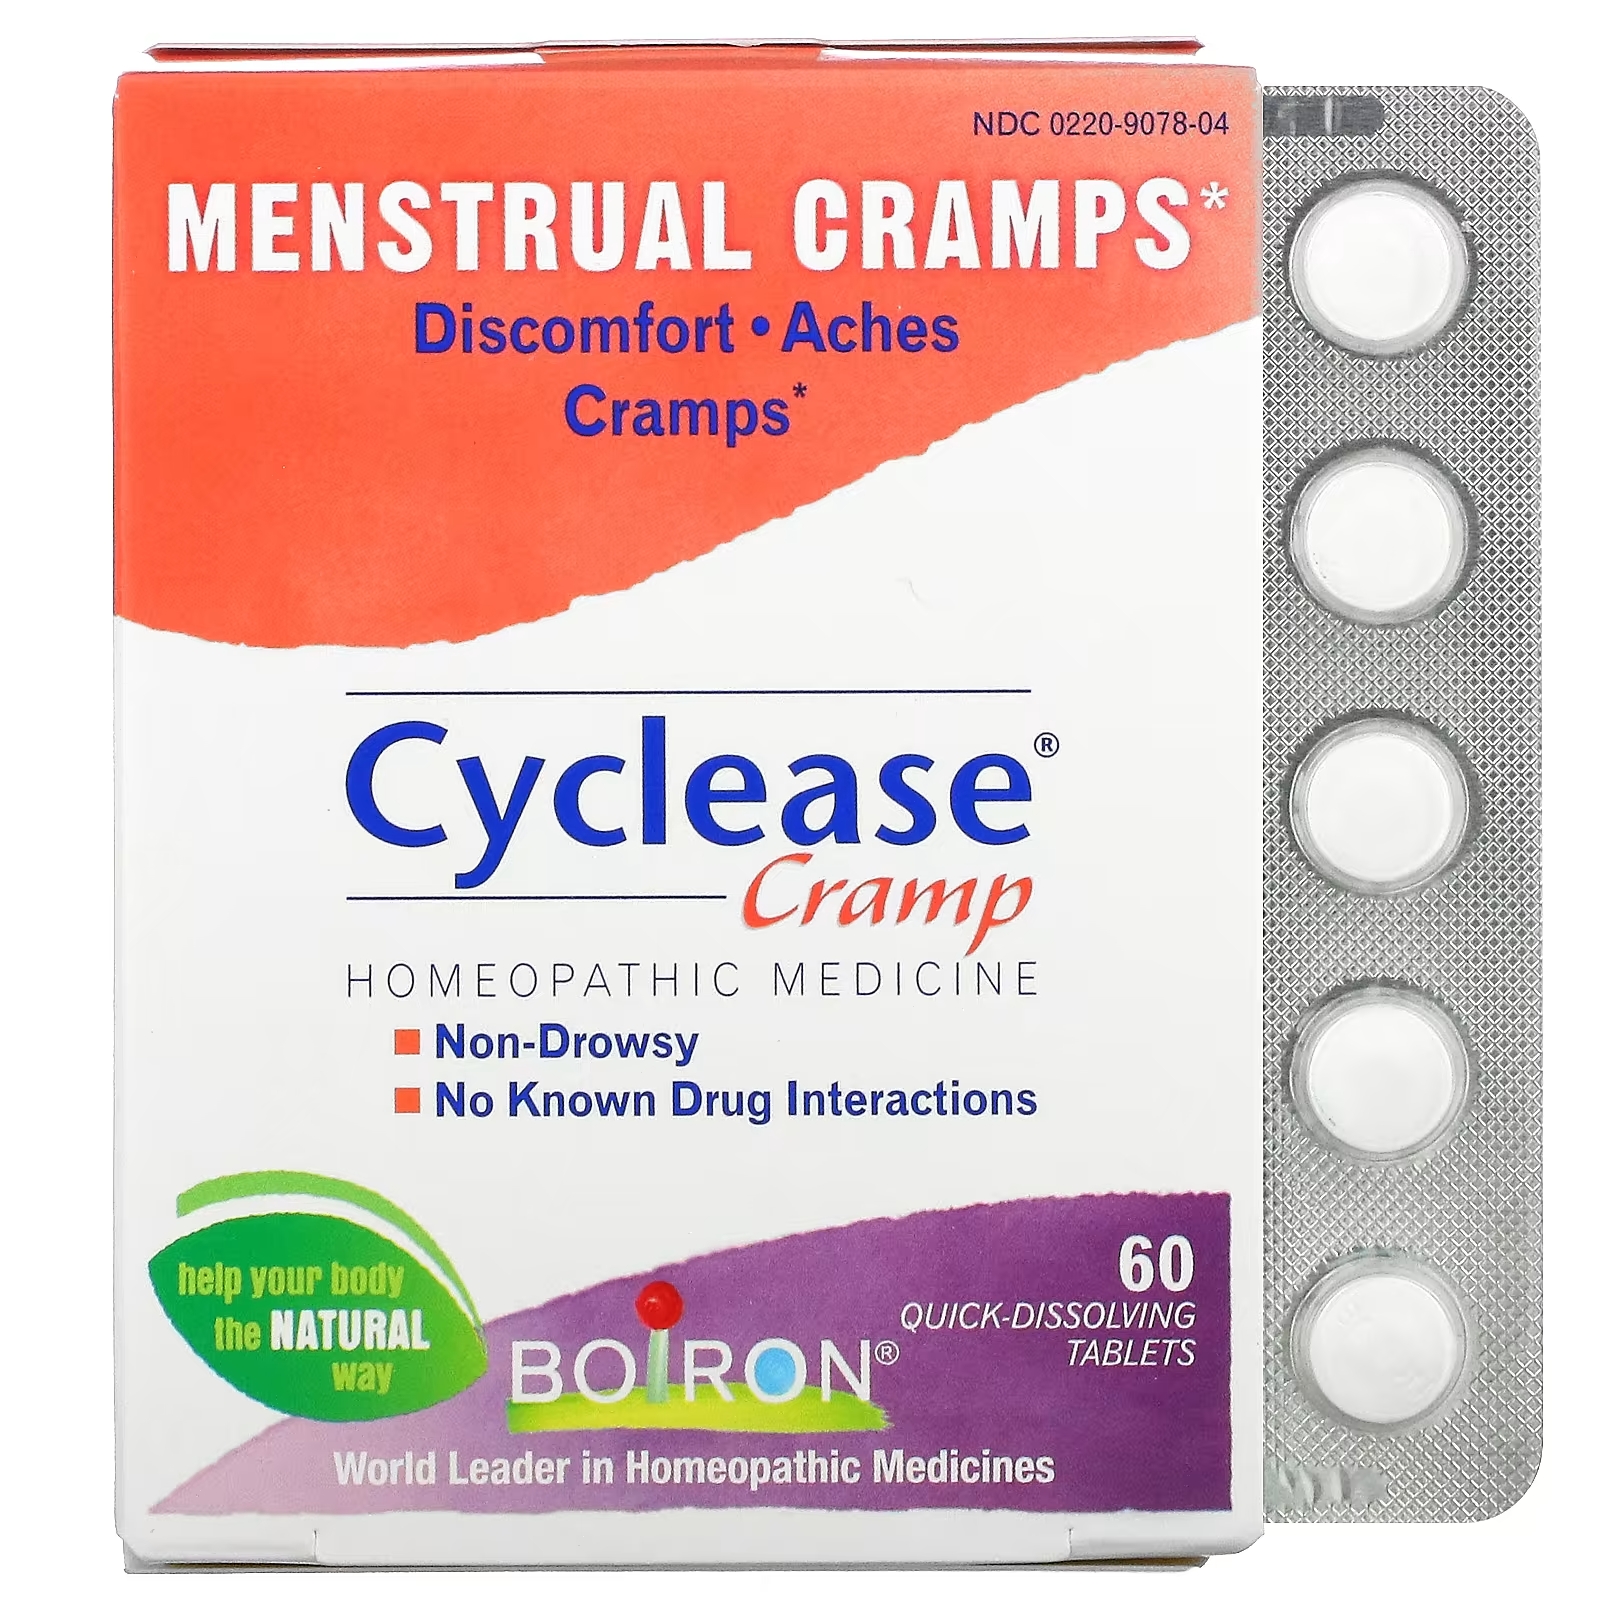 Boiron Cyclease Cramp менструальные спазмы, 60 быстрорастворимых таблеток boiron cyclease cramp менструальные спазмы 60 быстрорастворимых таблеток